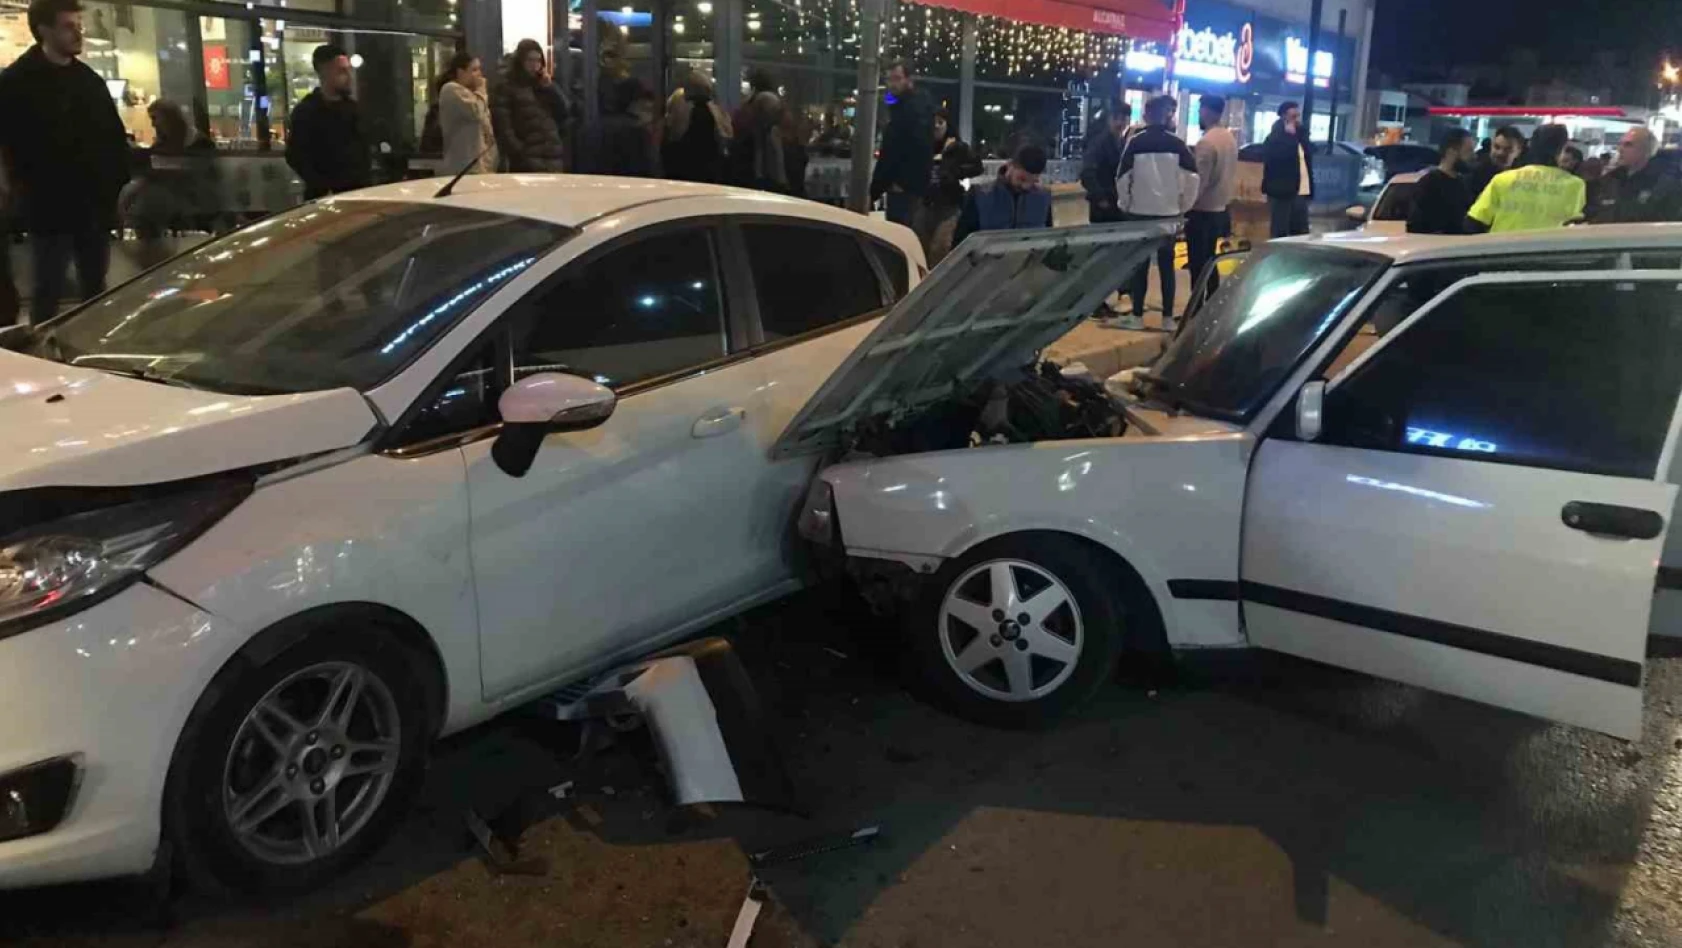 Elazığ'da otomobil, park halindeki araçlara çarptı: 2 yaralı